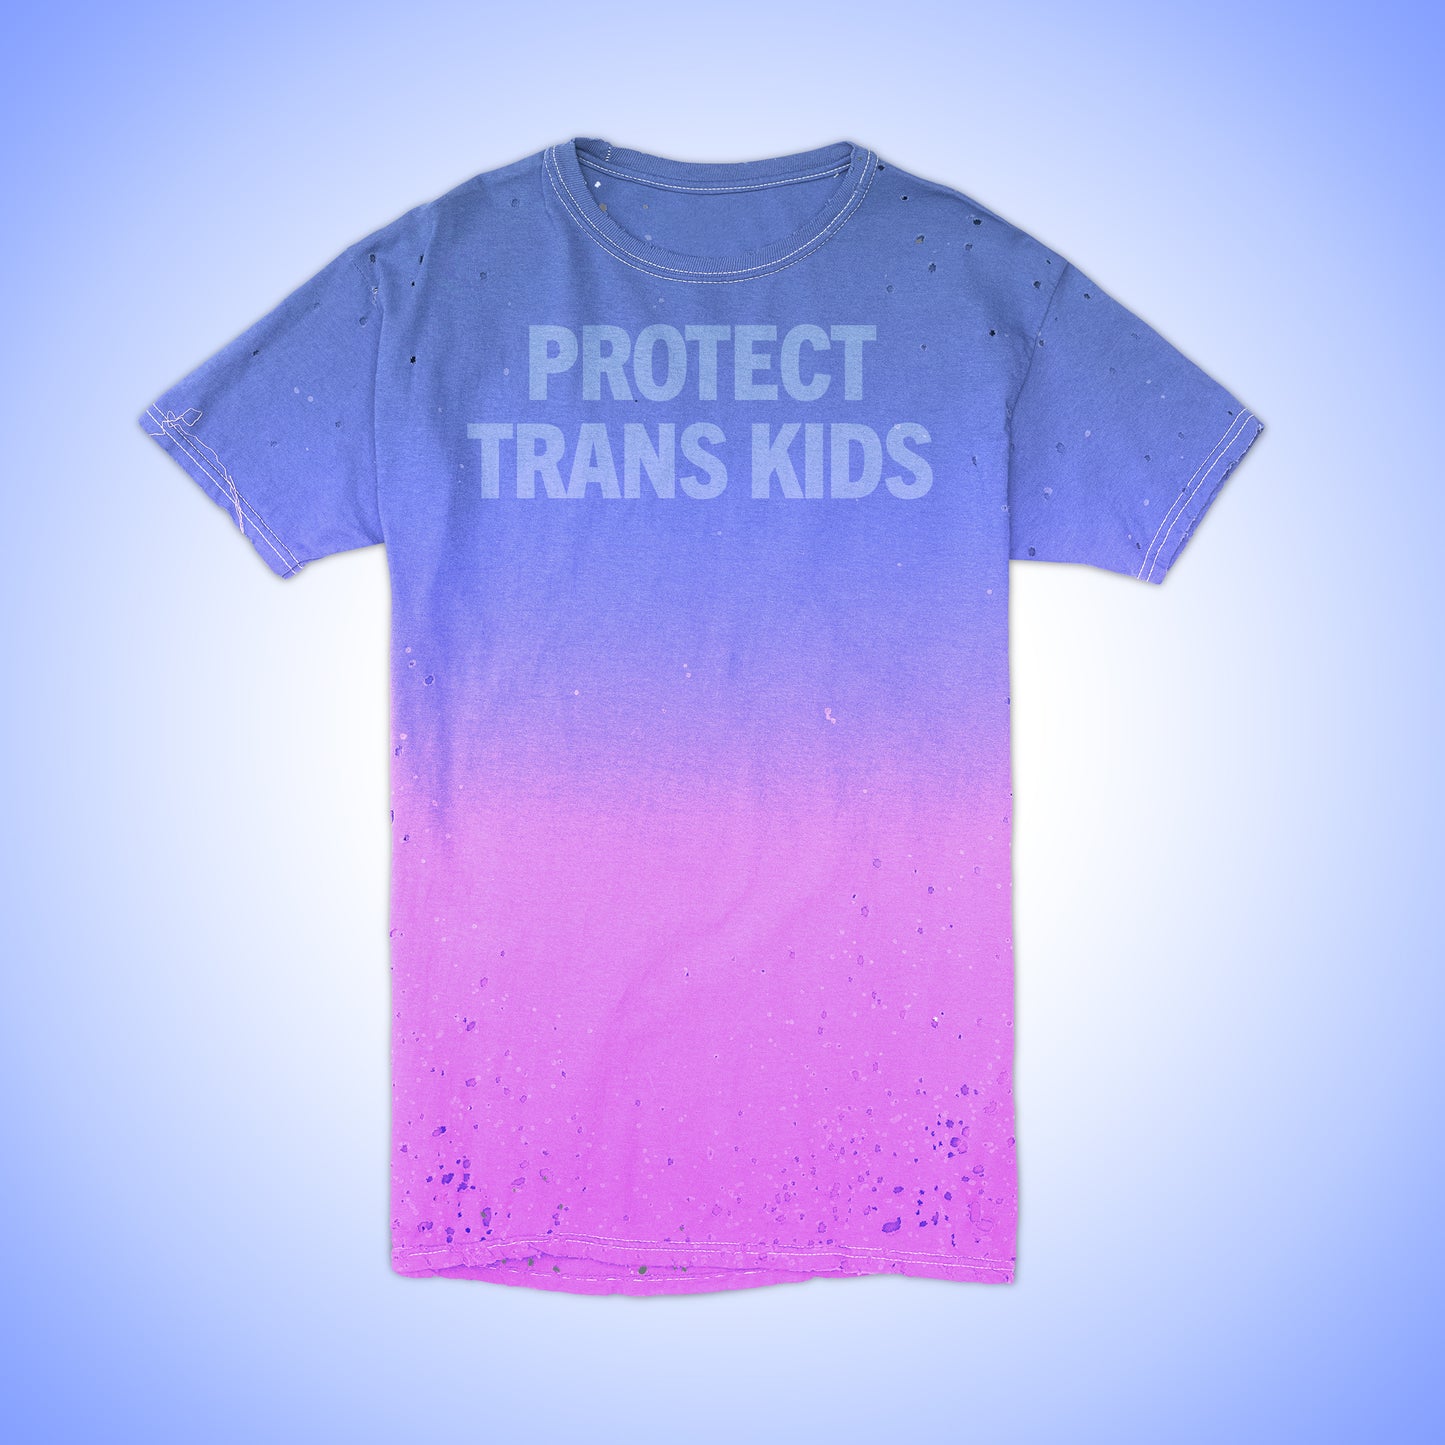 Future Vintage Tee: "Protect Trans Kids"